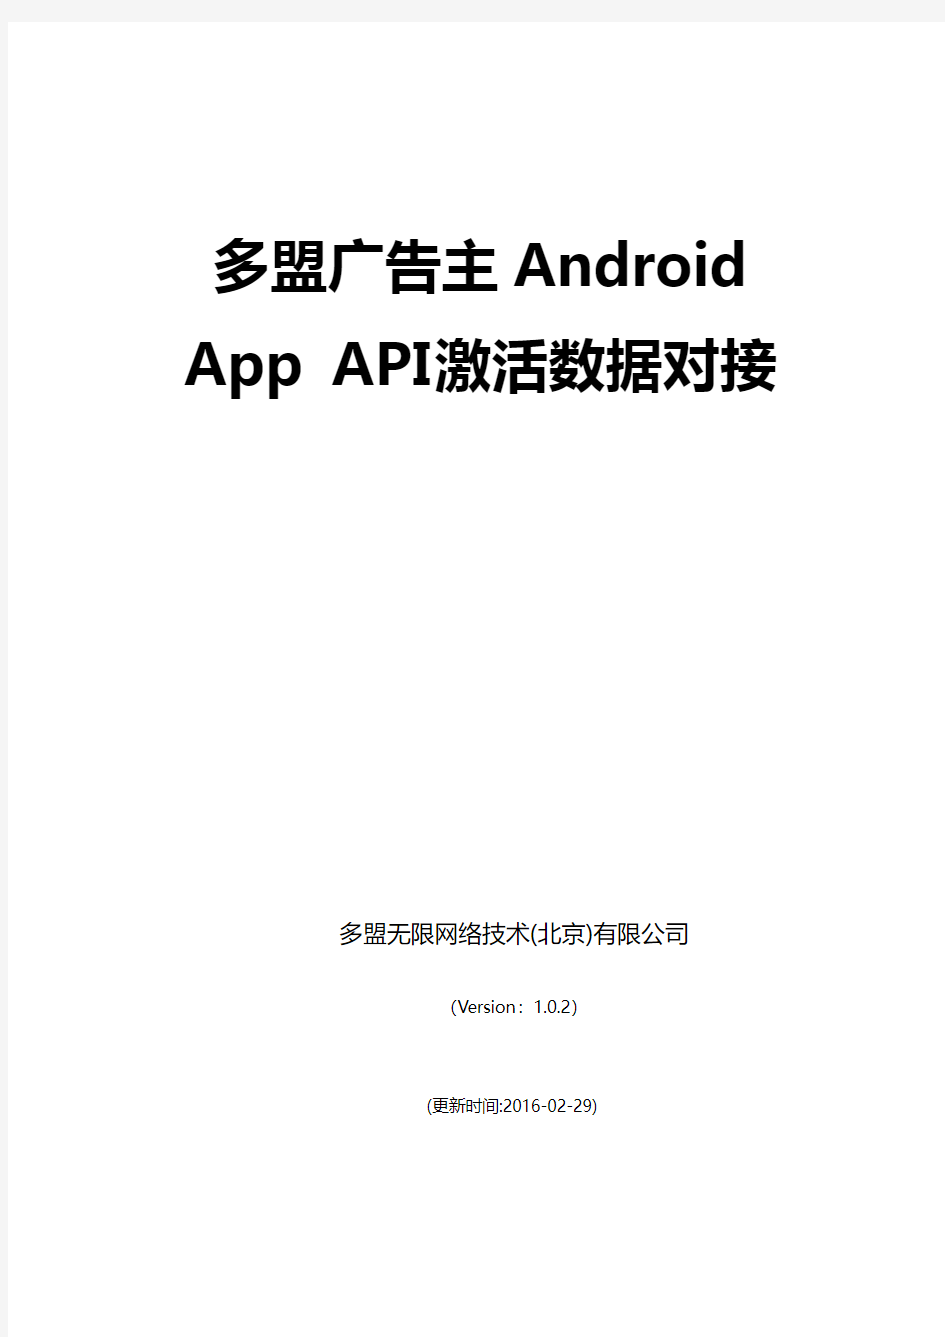 多盟广告主Android APP激活数据对接_v1.0.2-API版